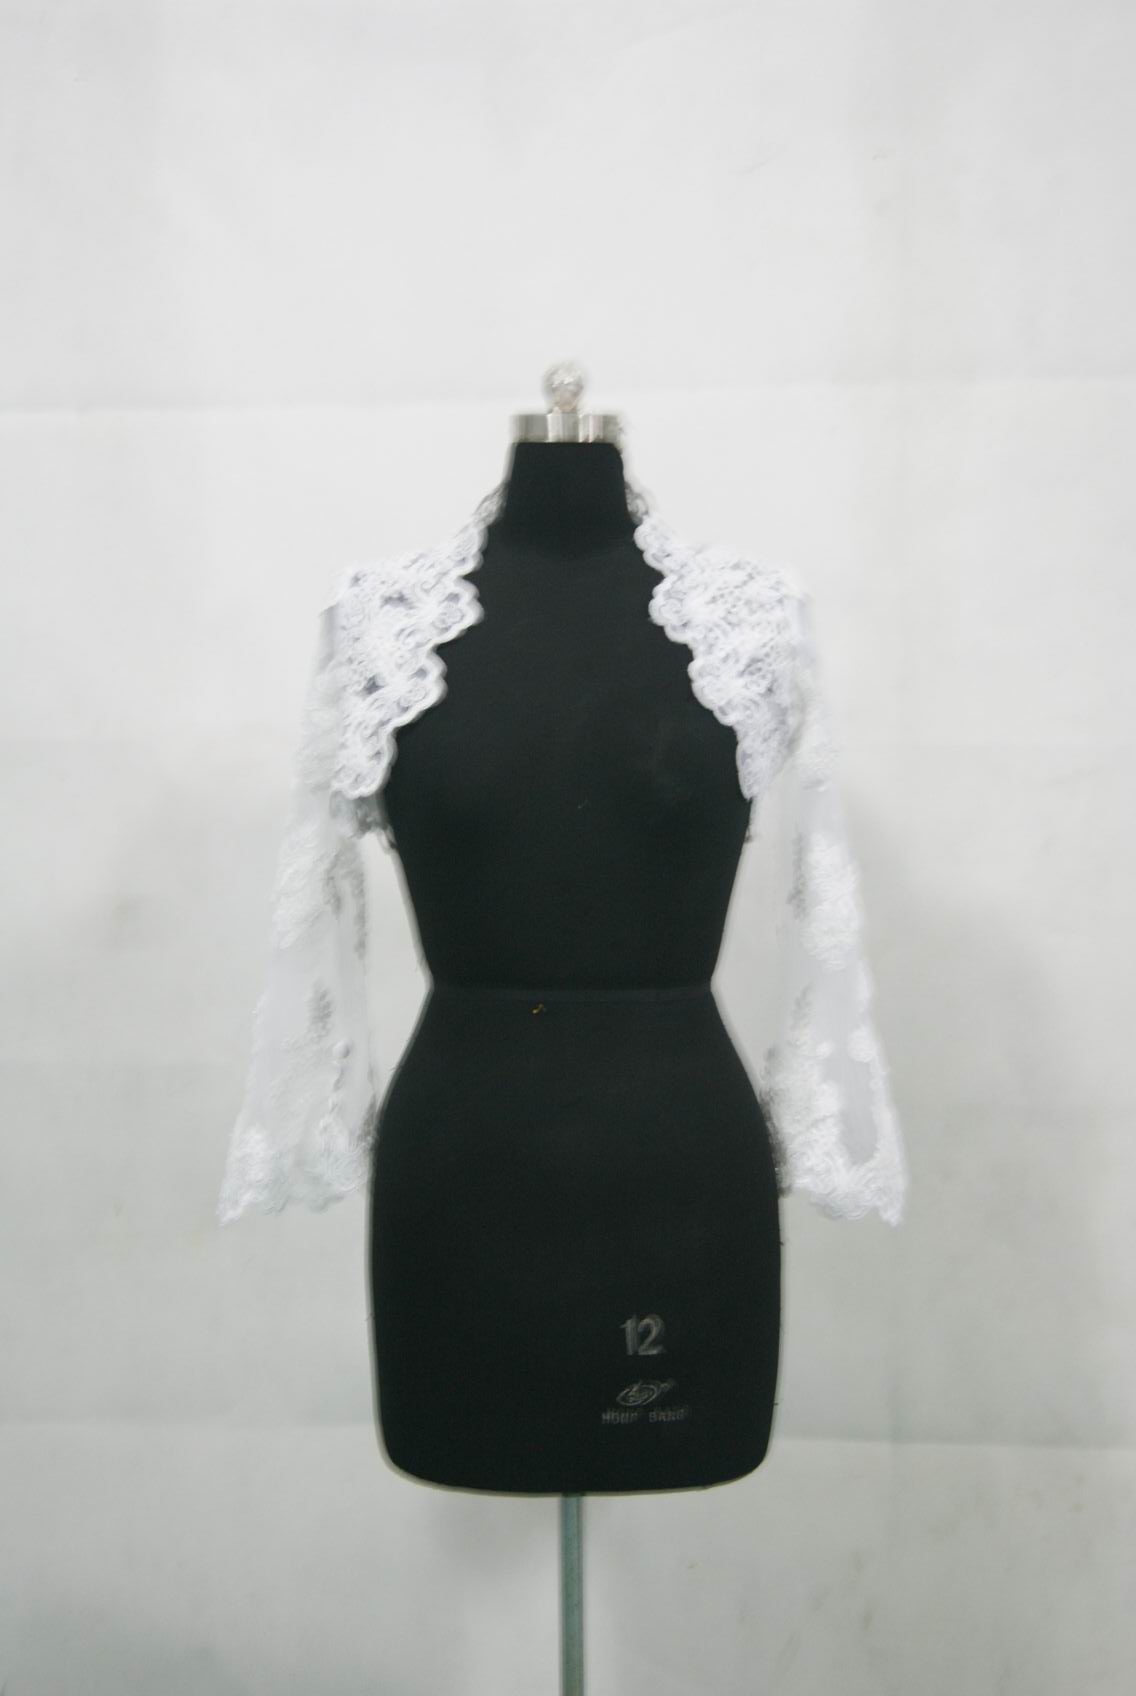 short lace bridal jacket